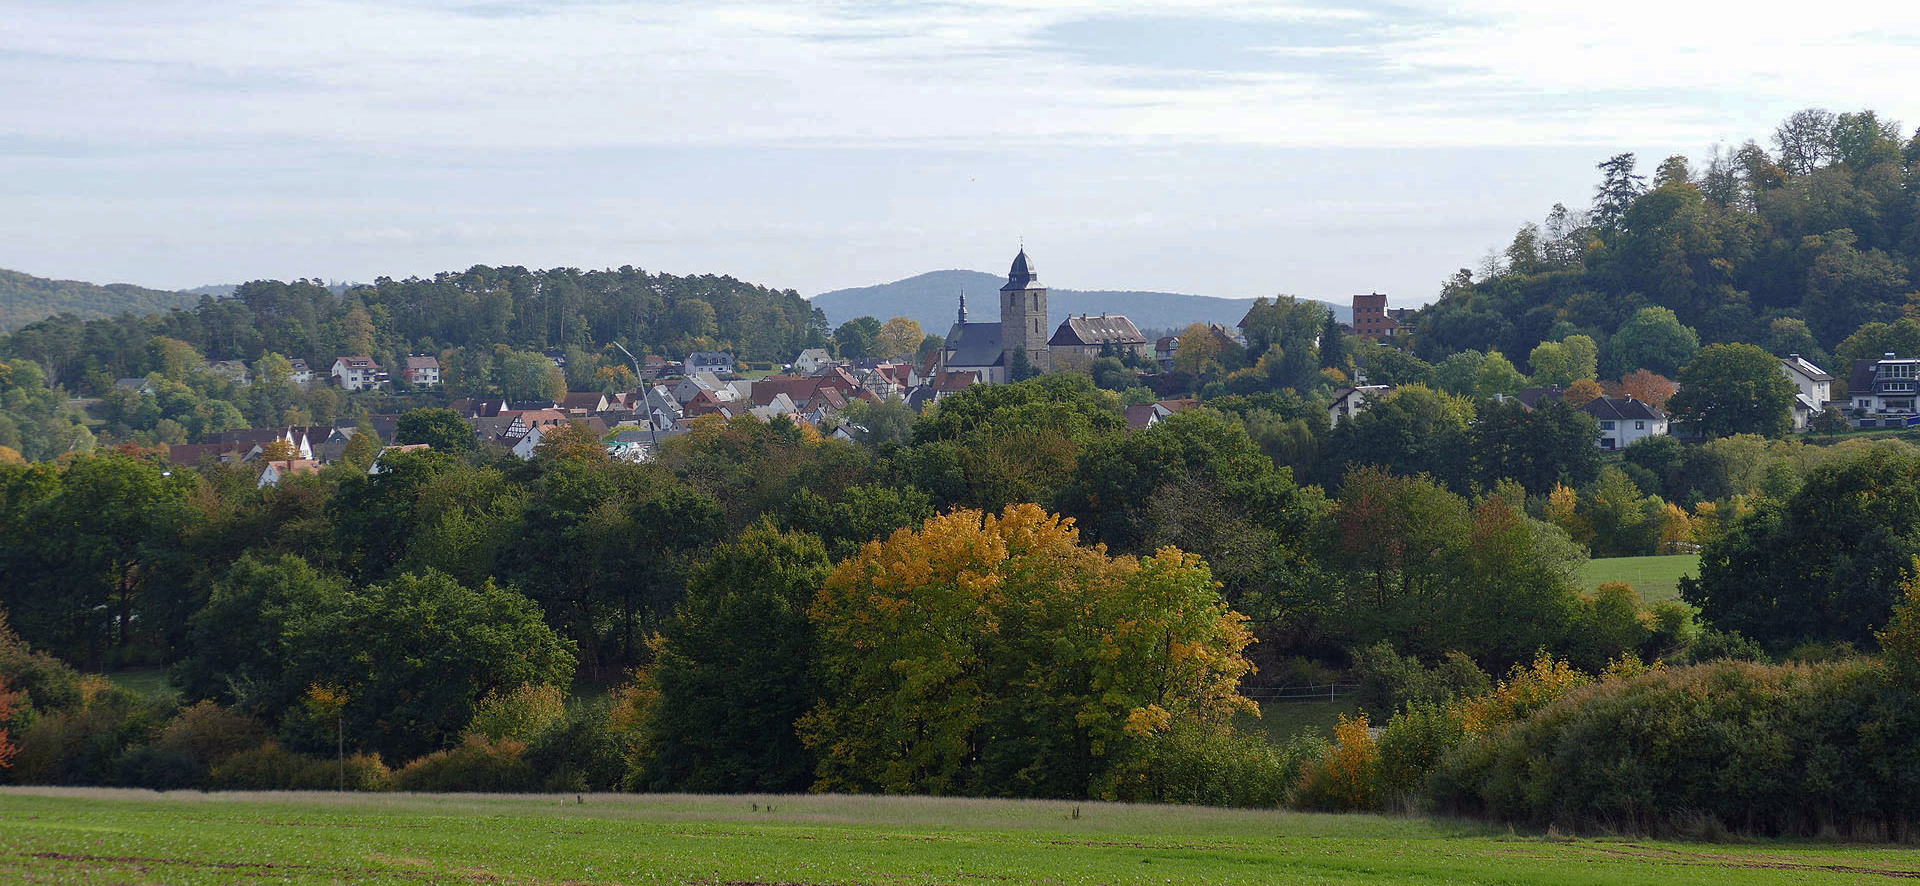 Katholische Kirchengemeinde St. Crescentius Naumburg